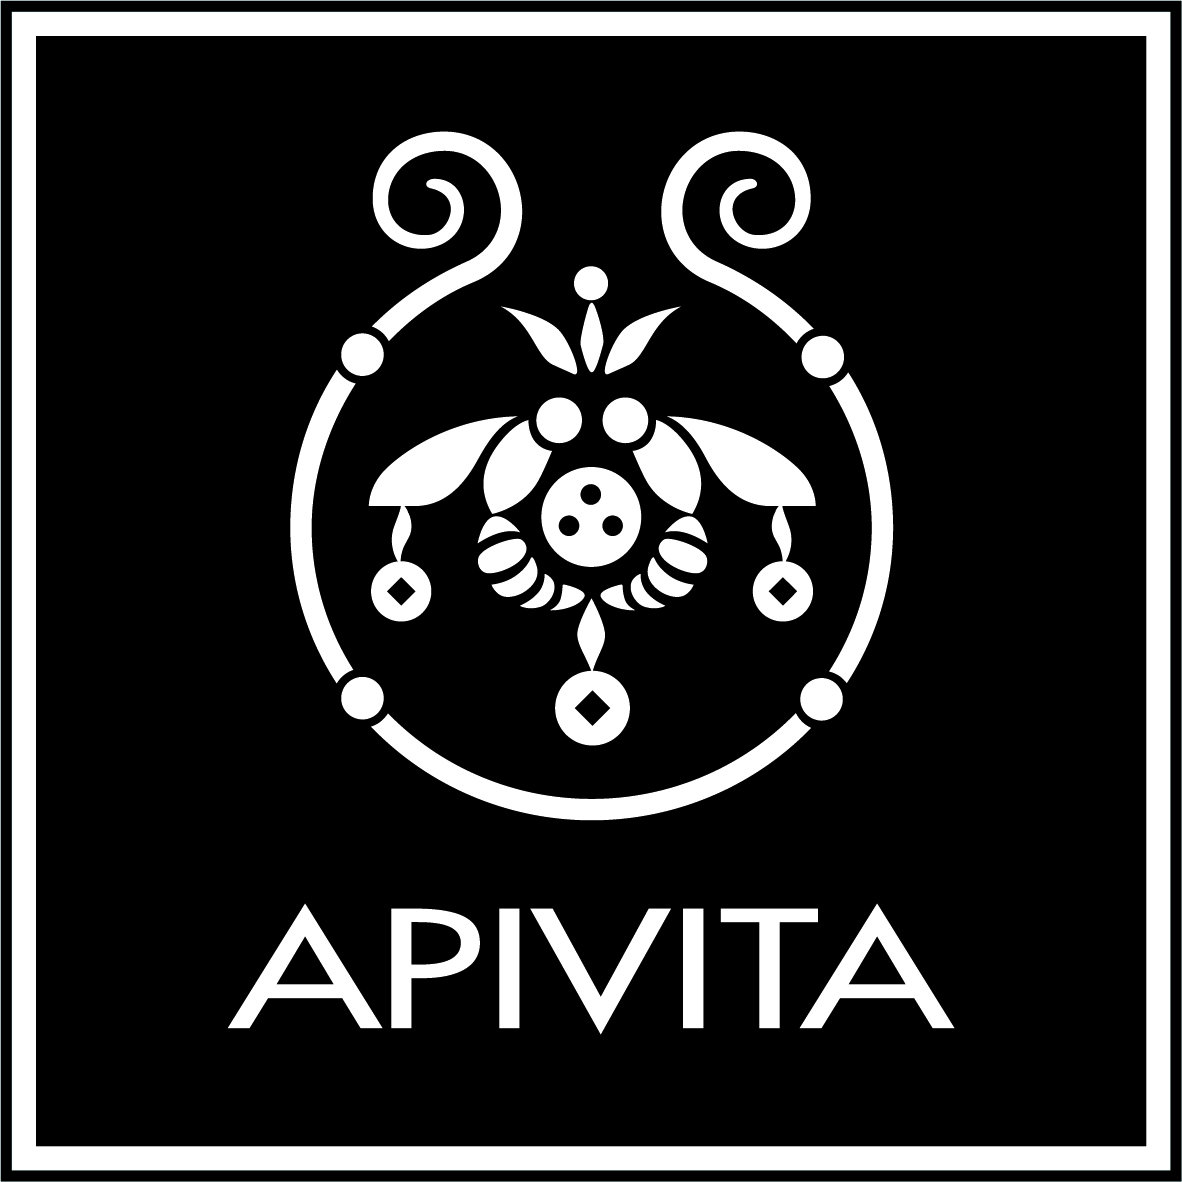 Apivita_final_logo_larger